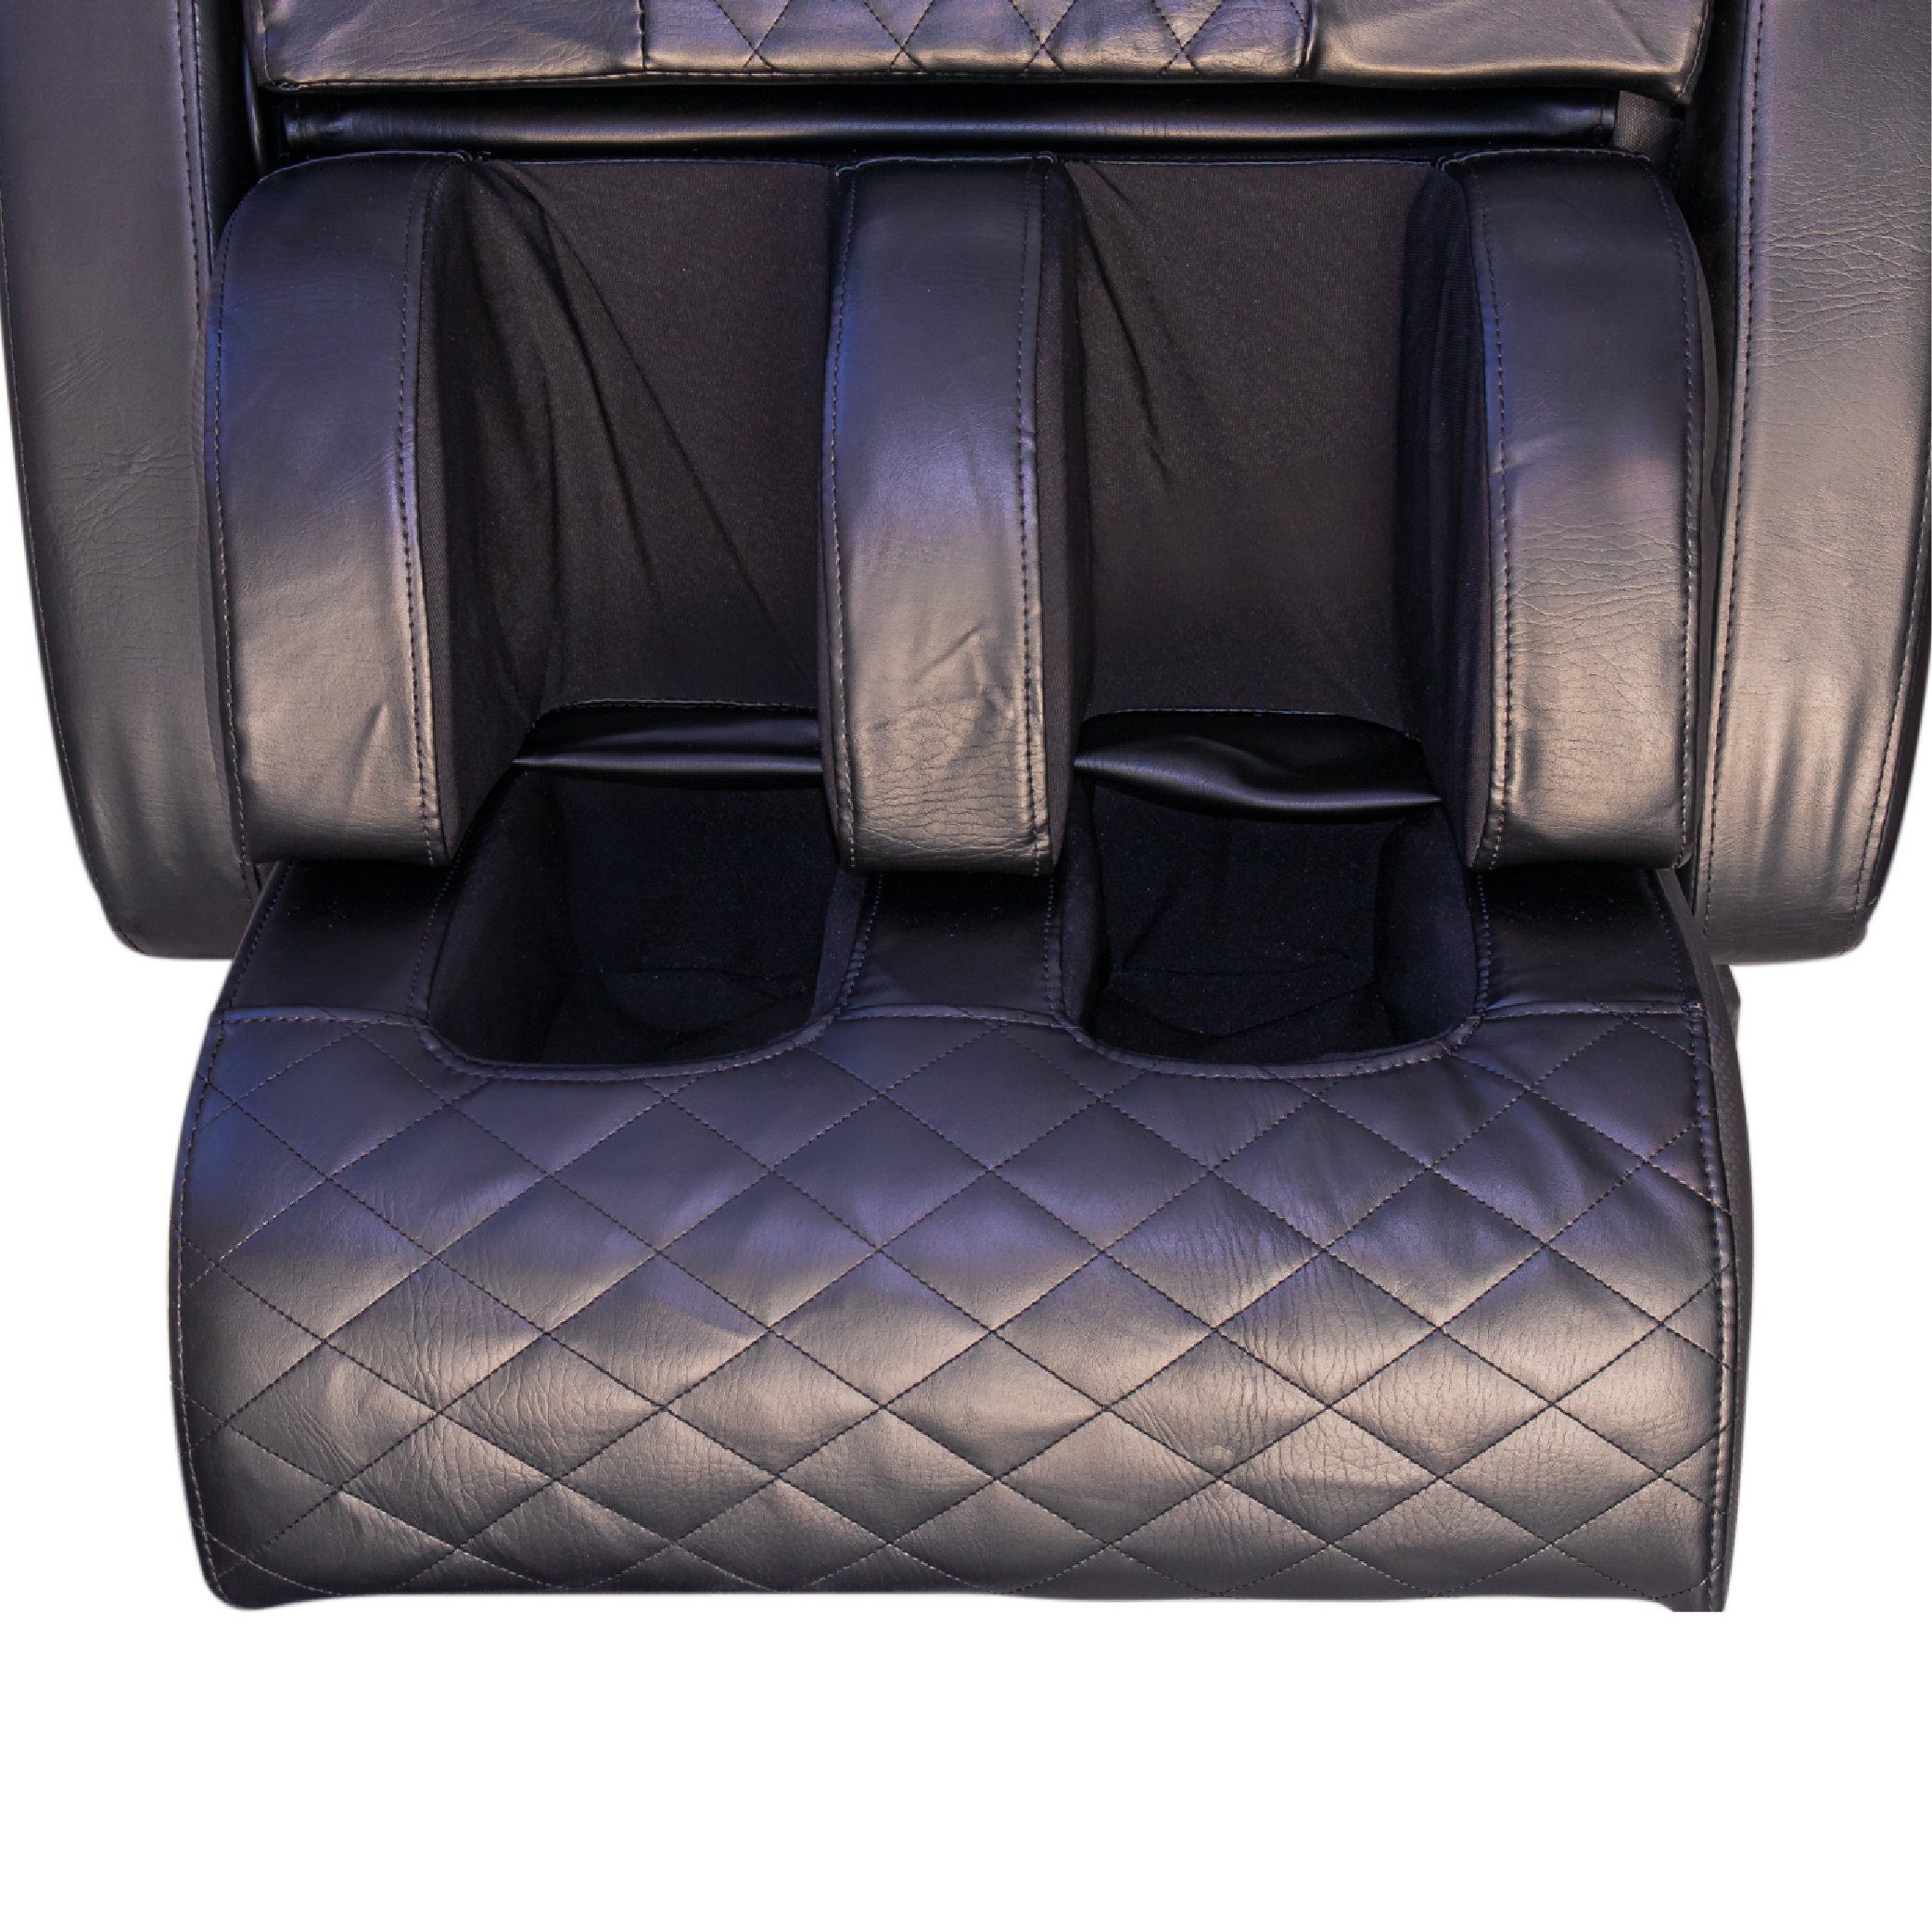 Chi tiết các bộ phận công nghệ của ghế massage Washima WA-986S